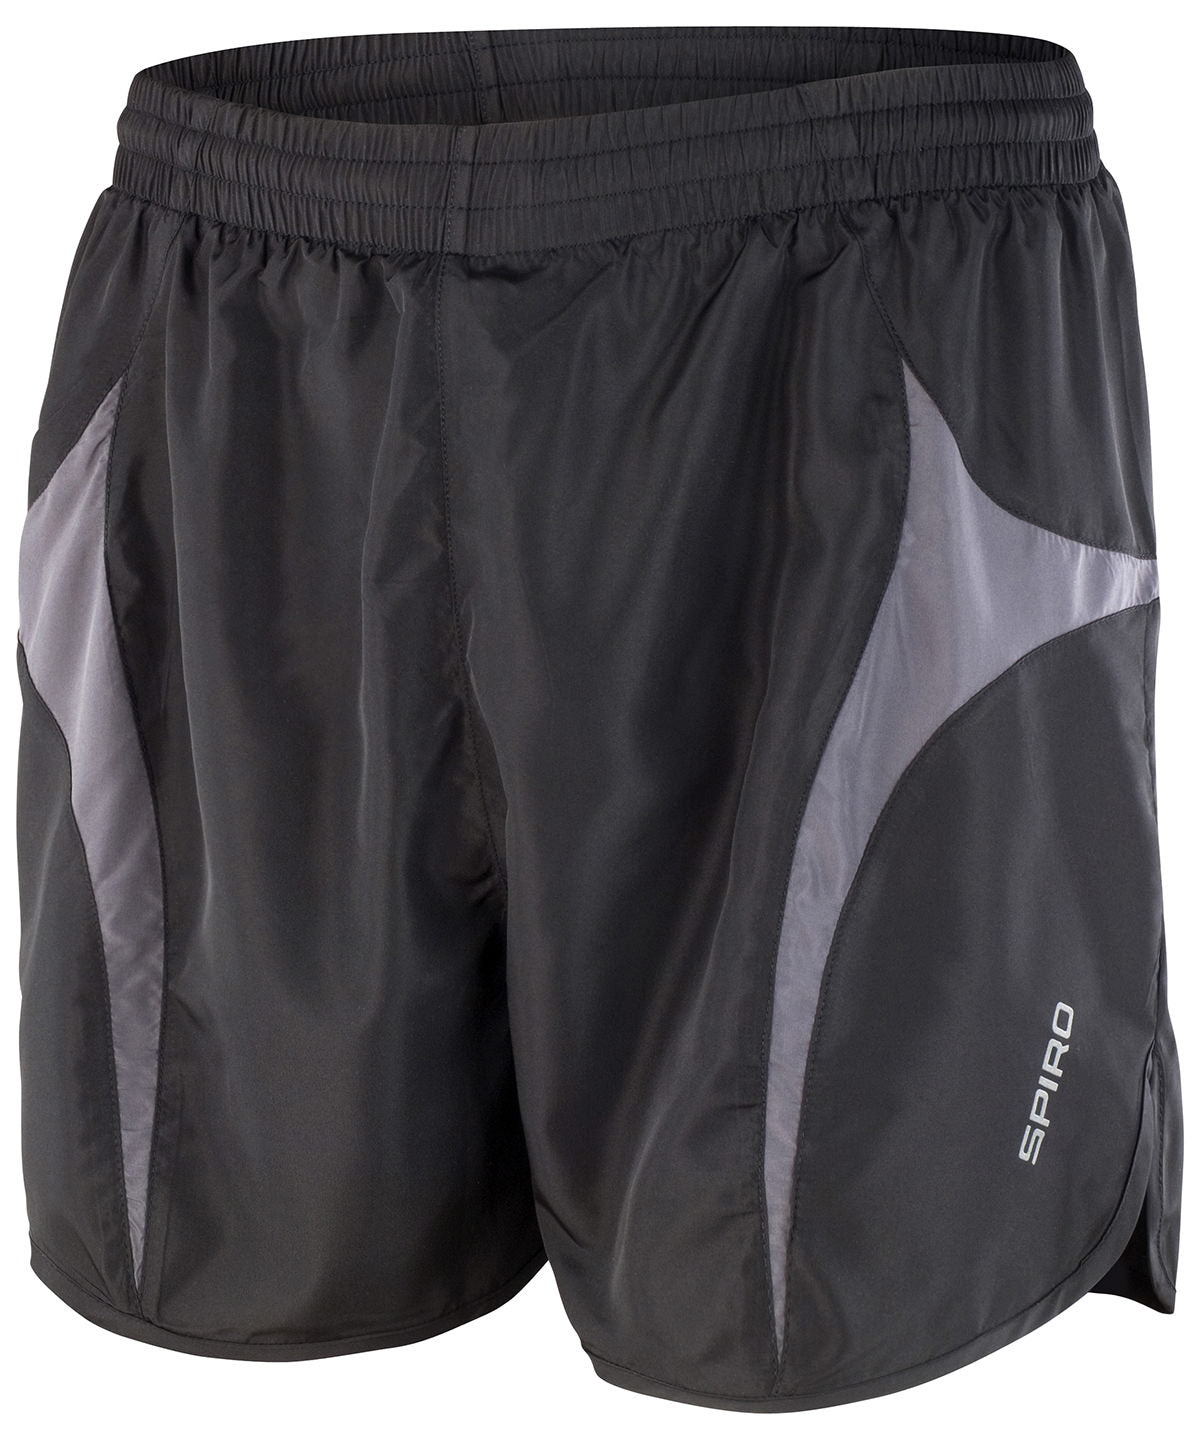 Spiro Spiro Micro-Lite Running Shorts